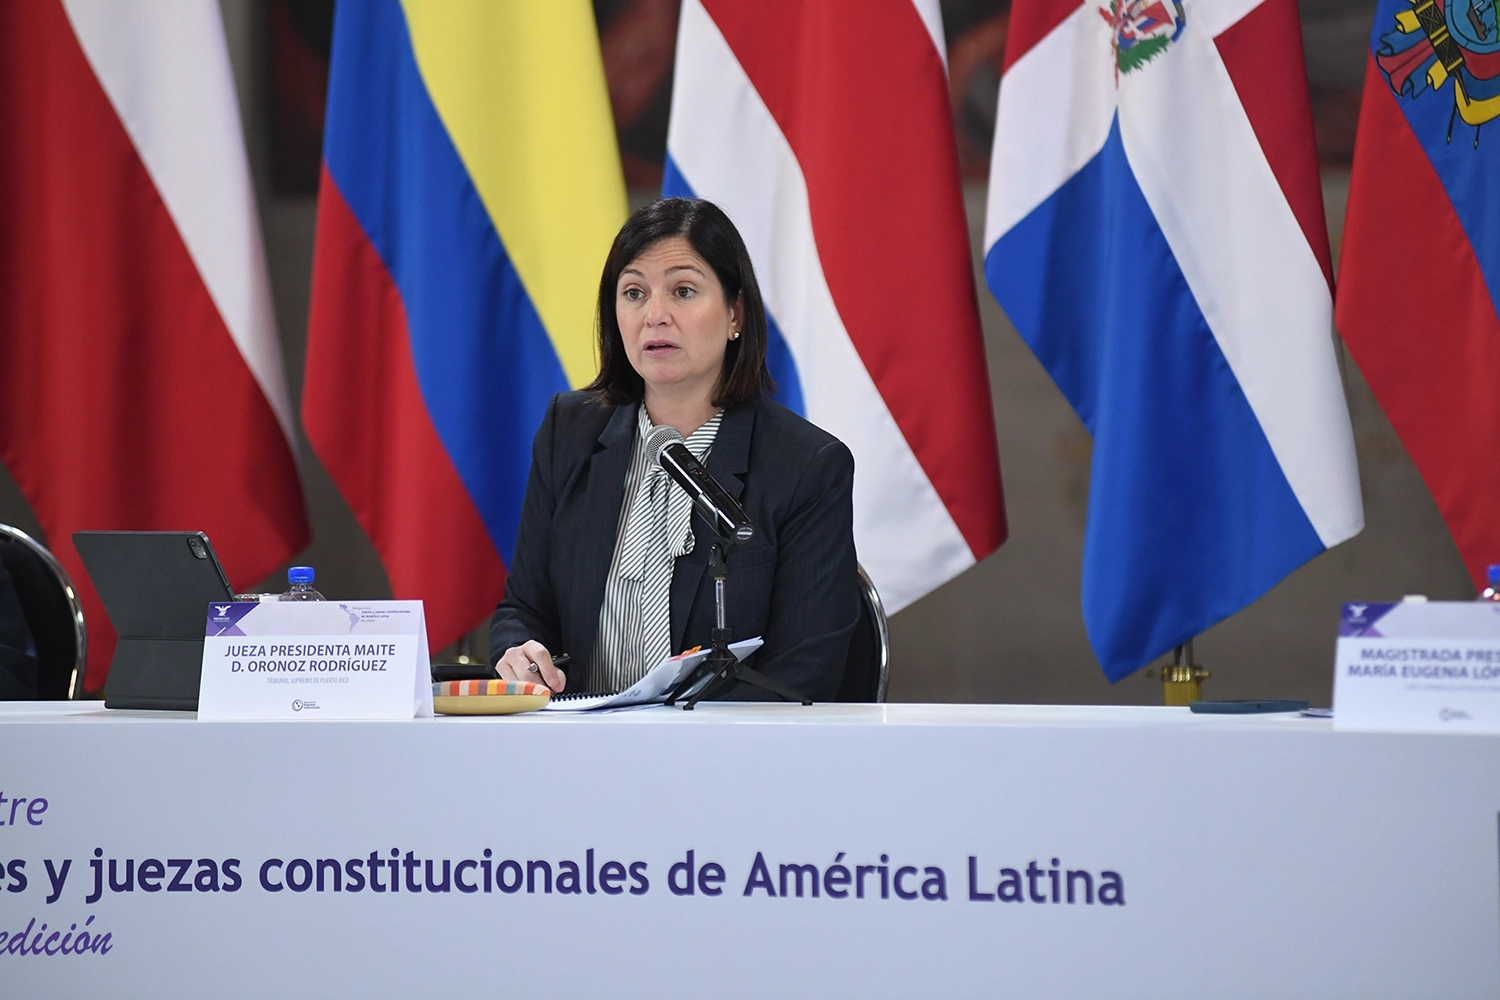 En representación del Tribunal Supremo de Puerto Rico, la Jueza Presidenta, Hon. Maite D. Oronoz Rodríguez participó como disertante en el segundo día de la cuarta edición de los “Diálogos entre jueces y juezas constitucionales de América Latina”.